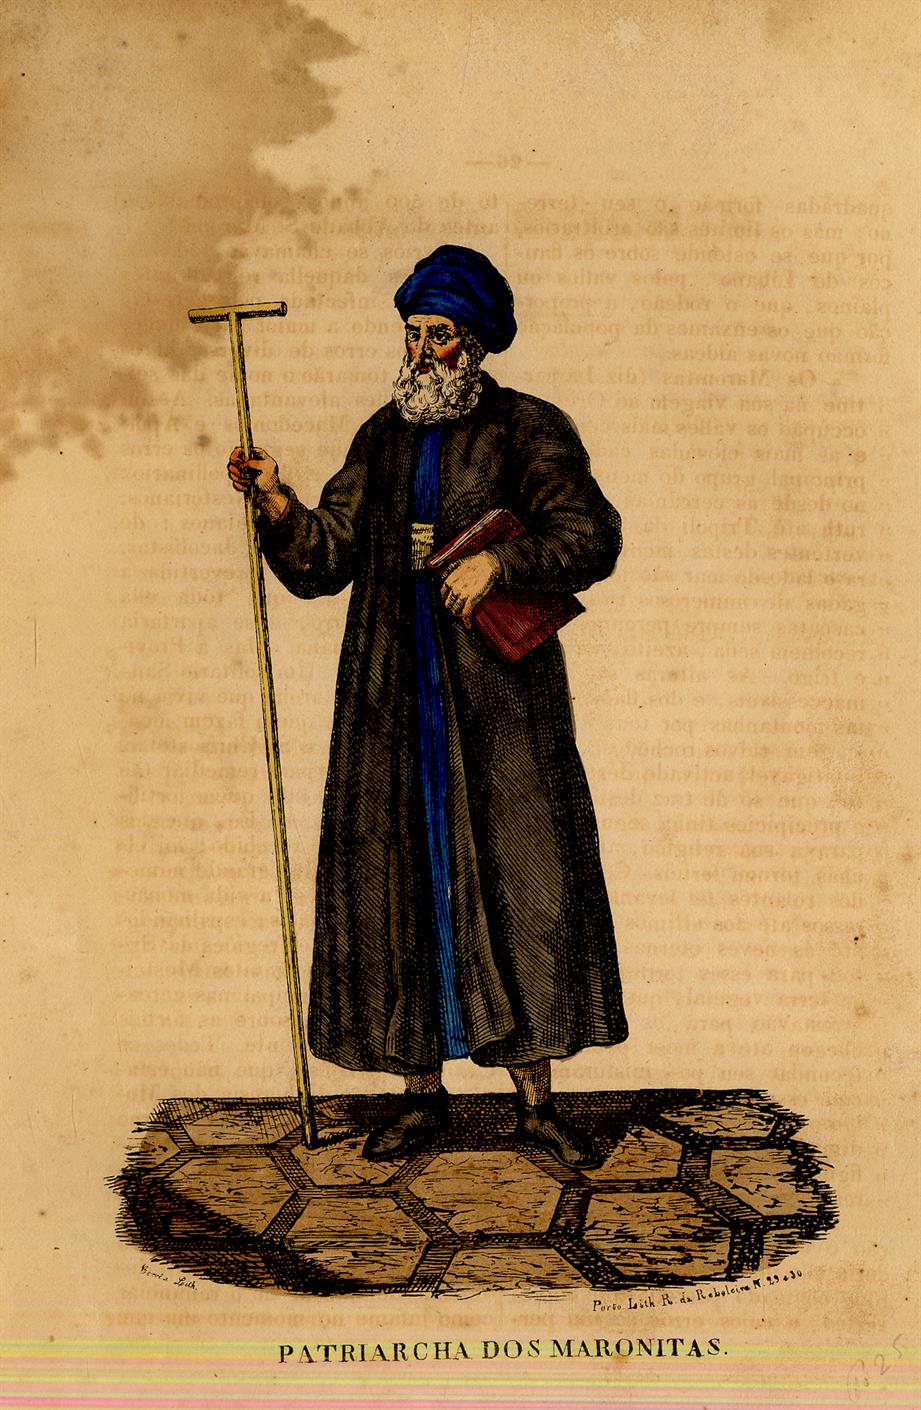 Patriarca dos maronitas